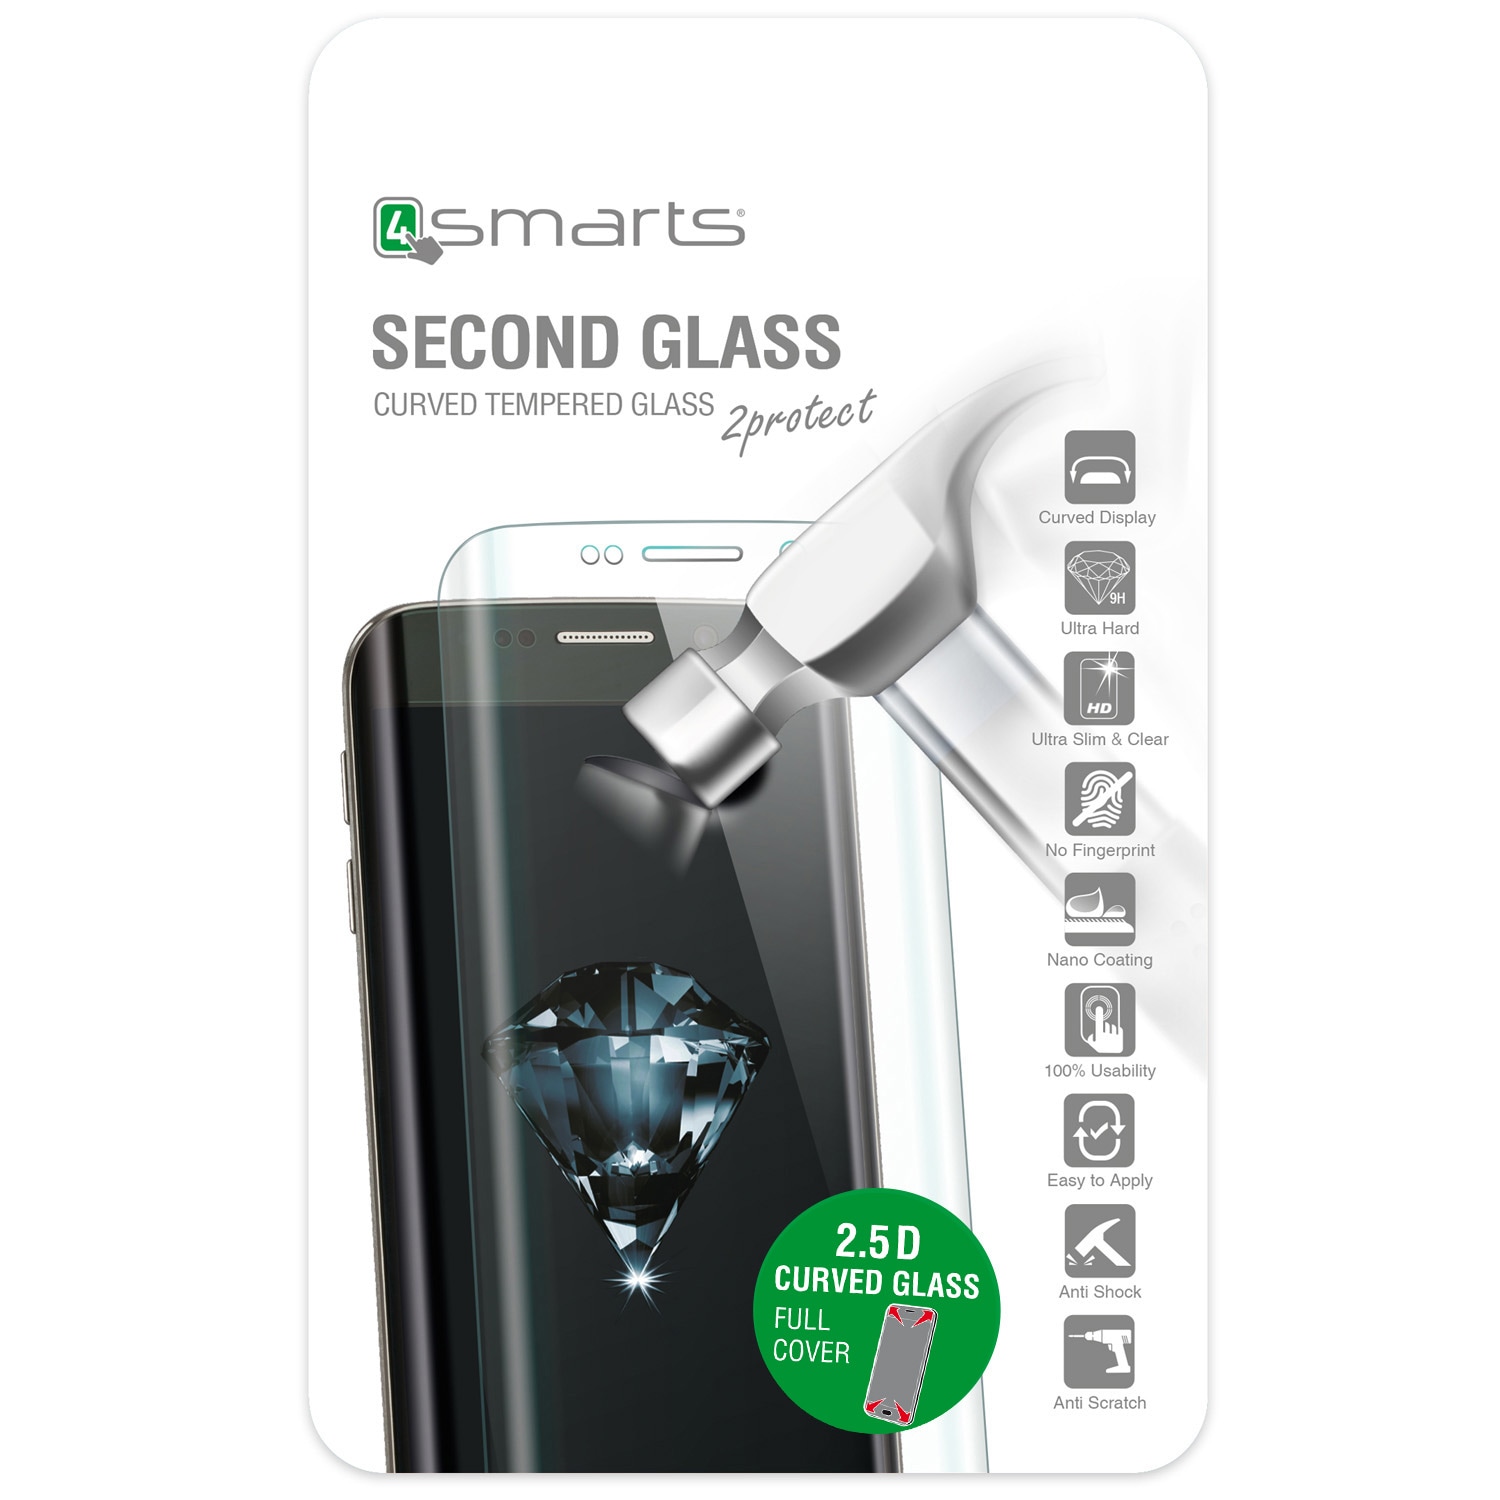 4smarts Second Glass Curved 2.5D til iPhone 6 / 6S - Svart